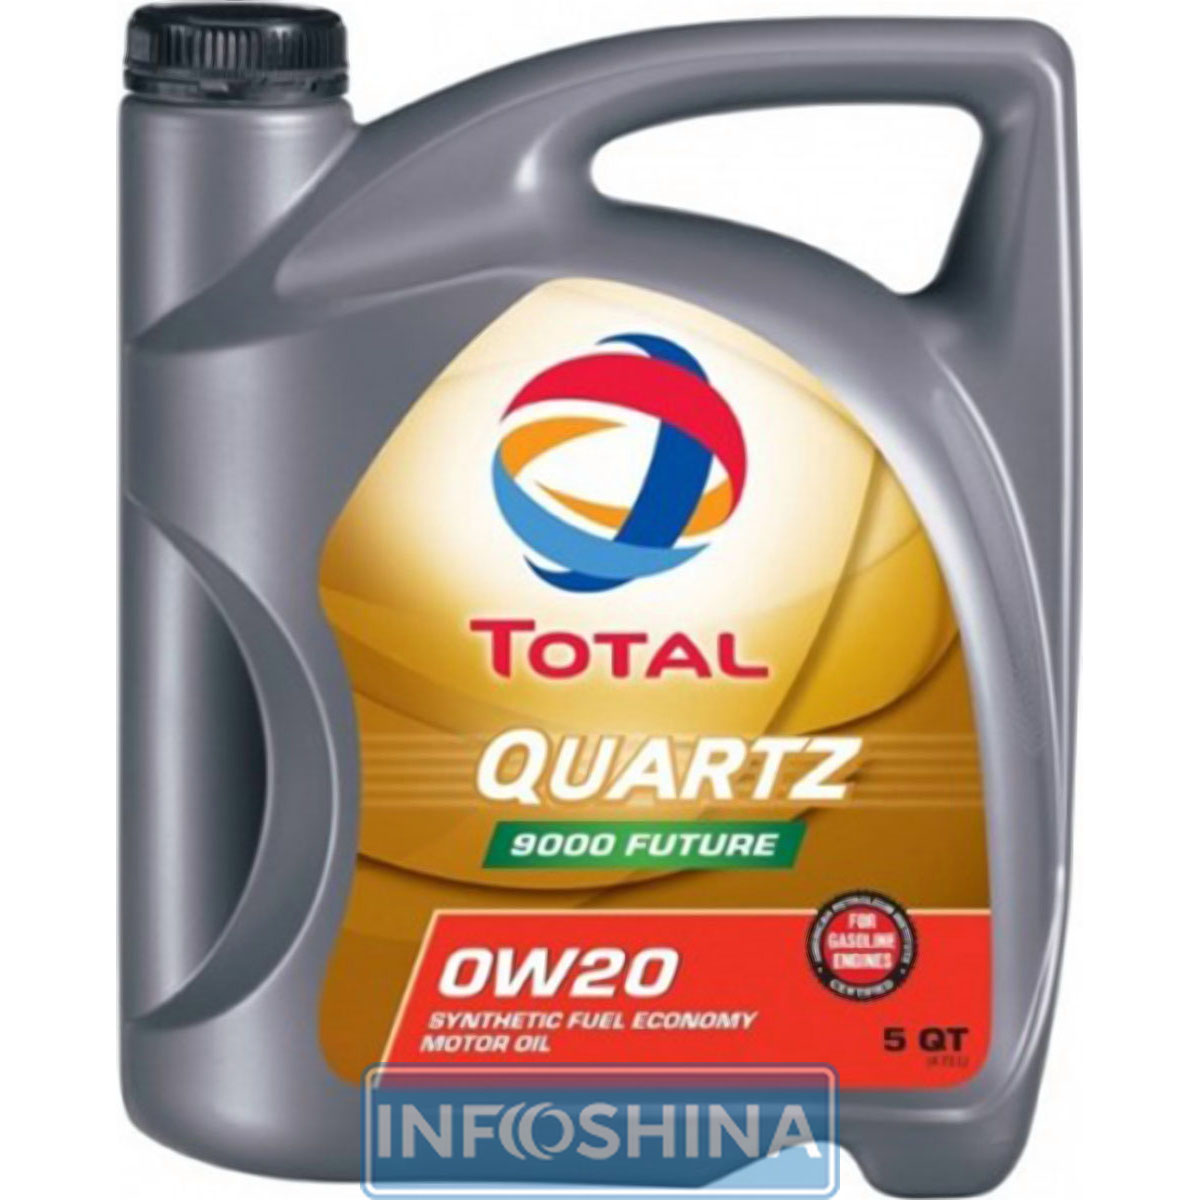 Купить масло Total Quartz 9000 Future GF5